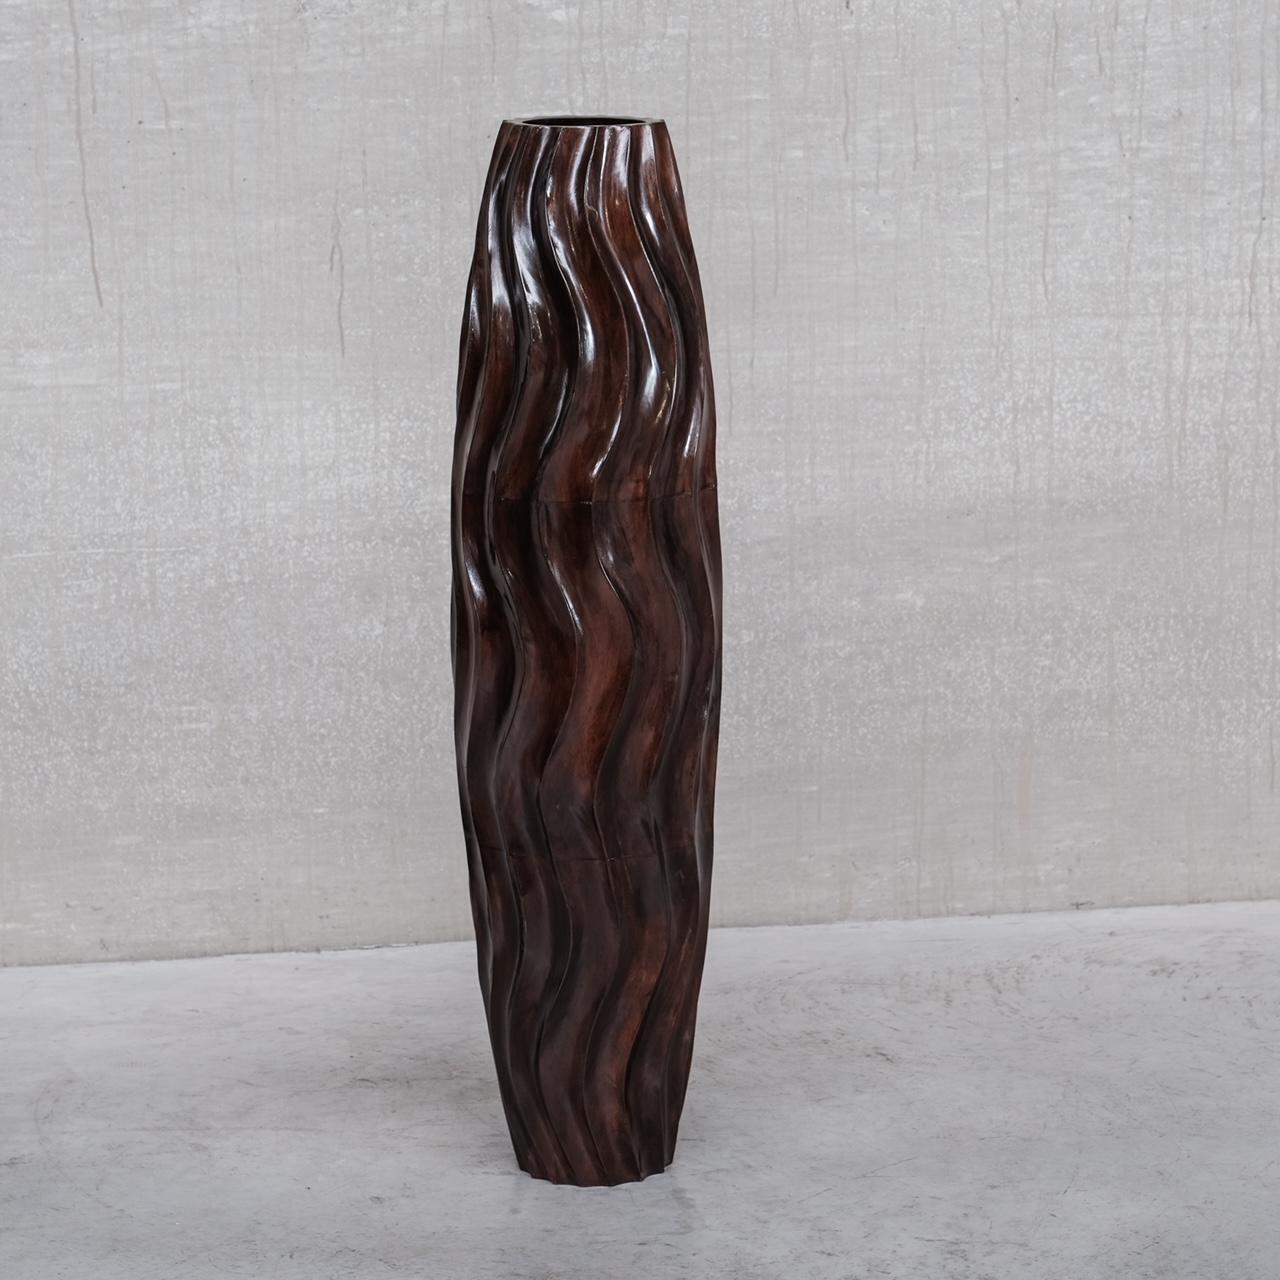 Un grand vase décoratif en bois. 

France, c1980s. 

Motif ondulé. 

Fourni avec un ensemble similaire, qui est vendu comme une paire dans une autre annonce. 

Bon état, restauré. 

Le diamètre supérieur est de 18 cm.

Emplacement : Belgique